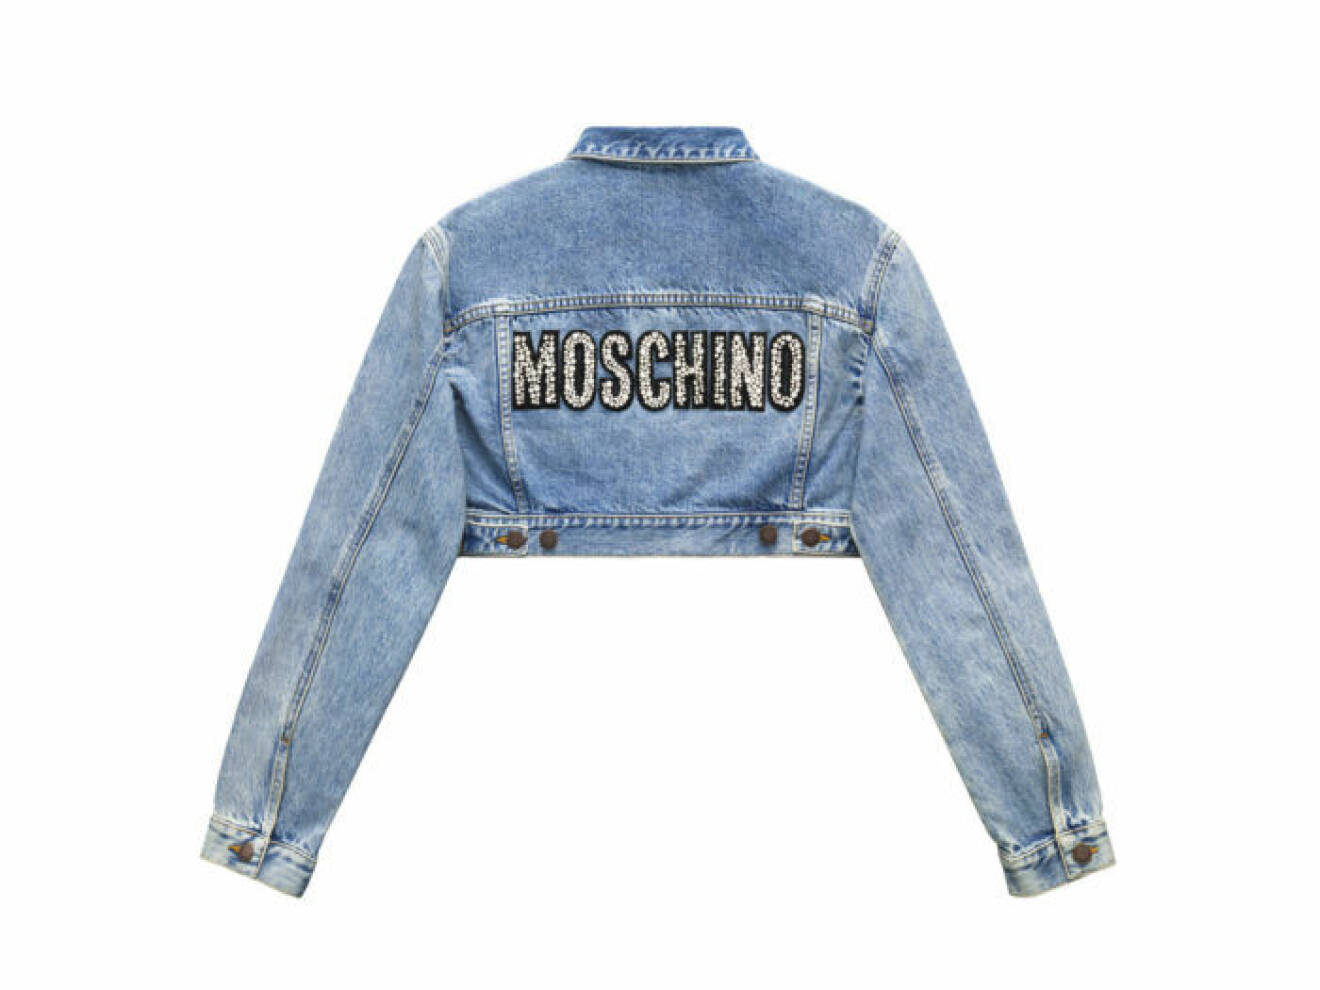 Croppad denimjacka med Moschinologga på ryggen Moschino [tv] H&M